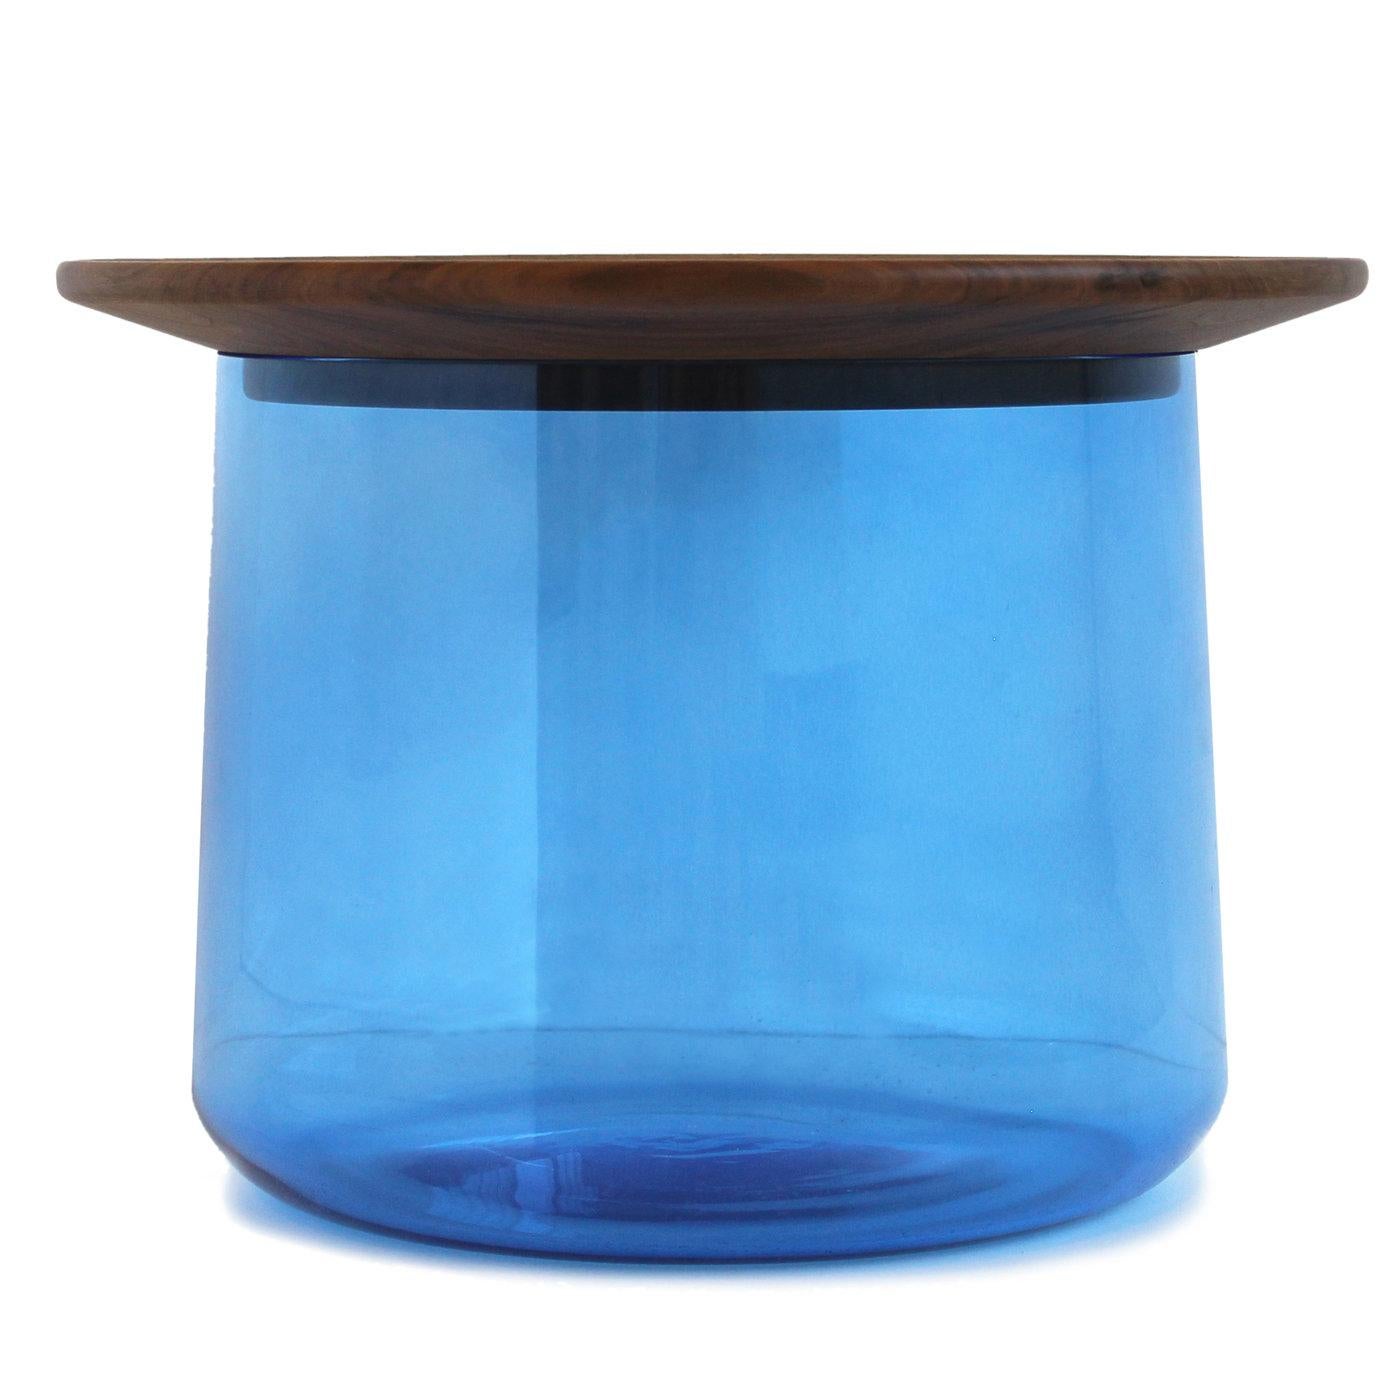 Cette table basse étonnante est composée d'un grand vase en verre coloré (qui peut servir de récipient ou d'espace de rangement) et d'un plateau en noyer massif 